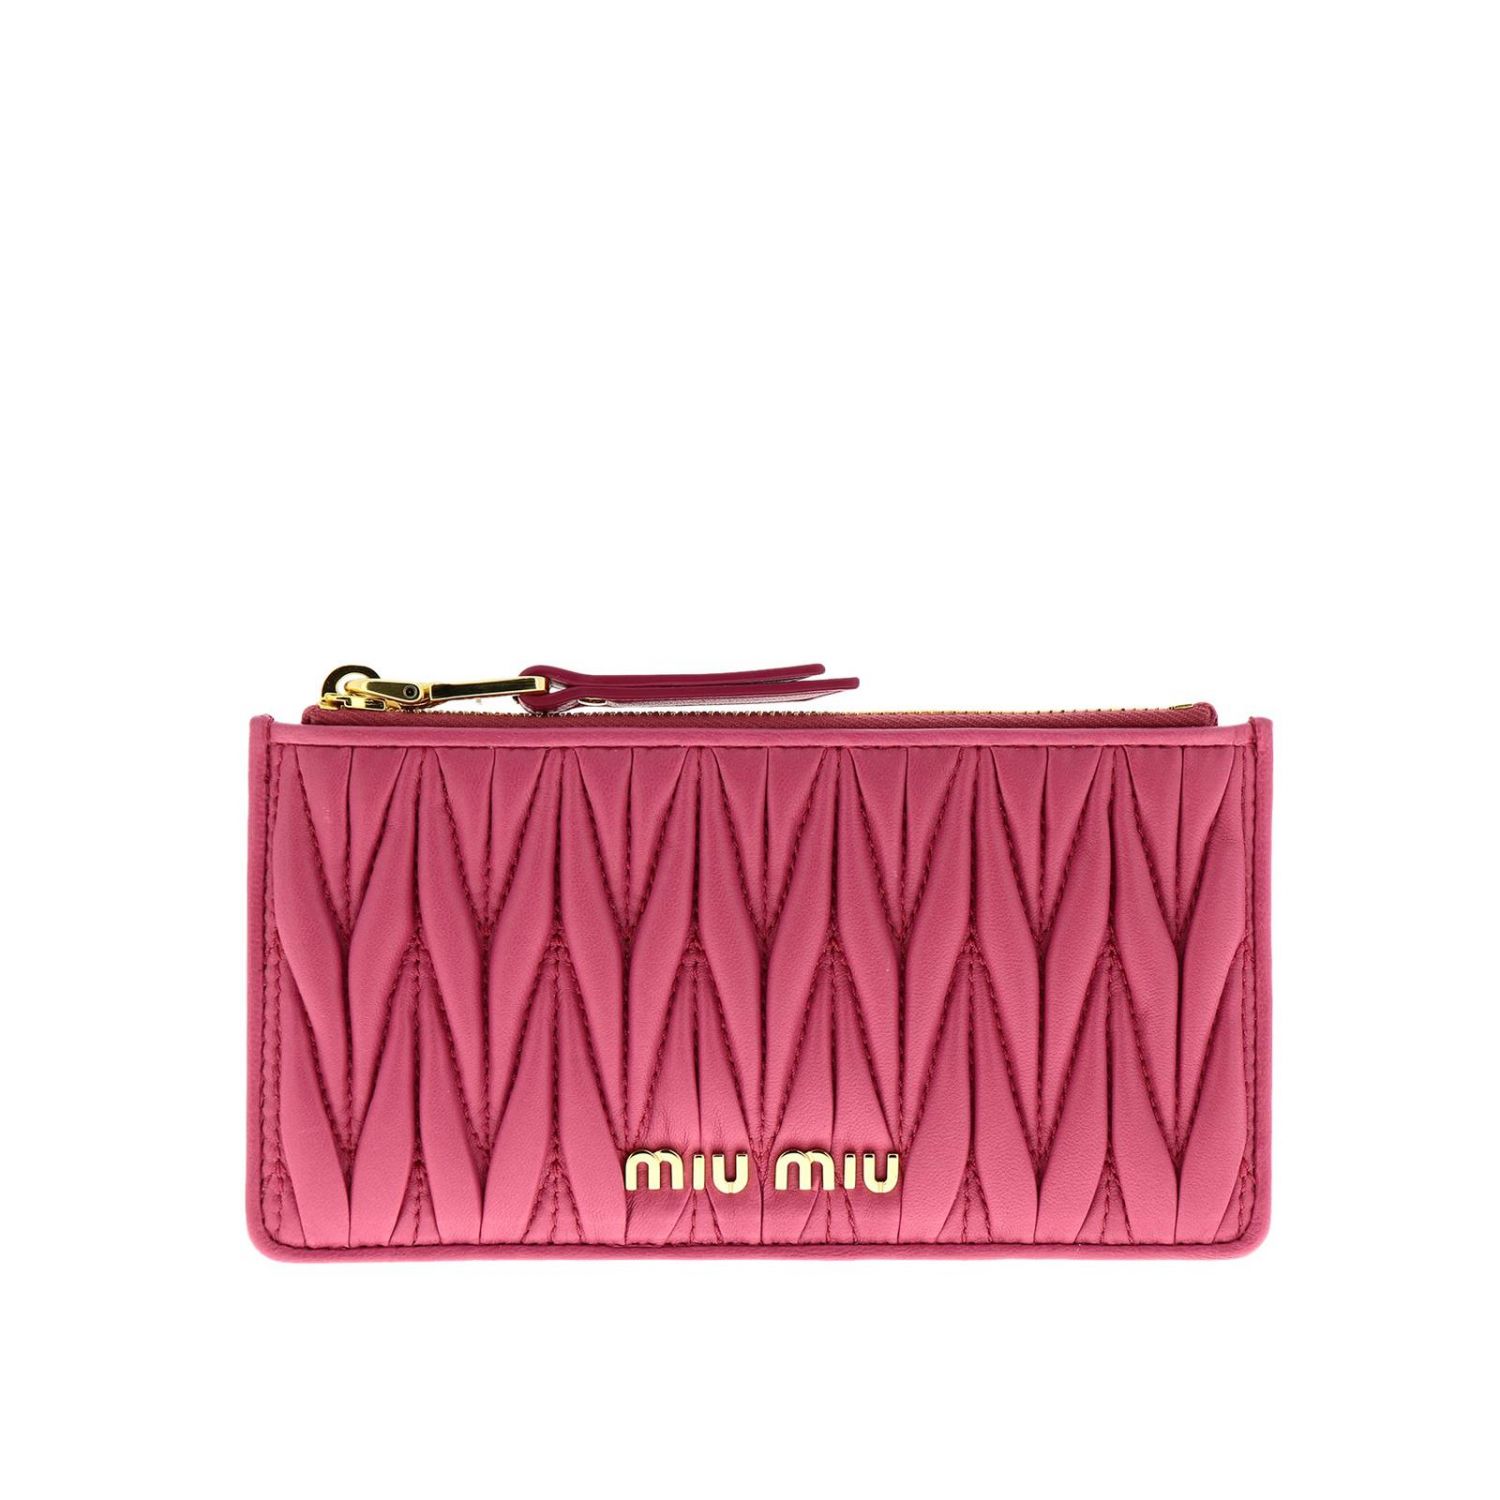 Credit card holder in genuine soft matelassé leather with Miu Miu logo